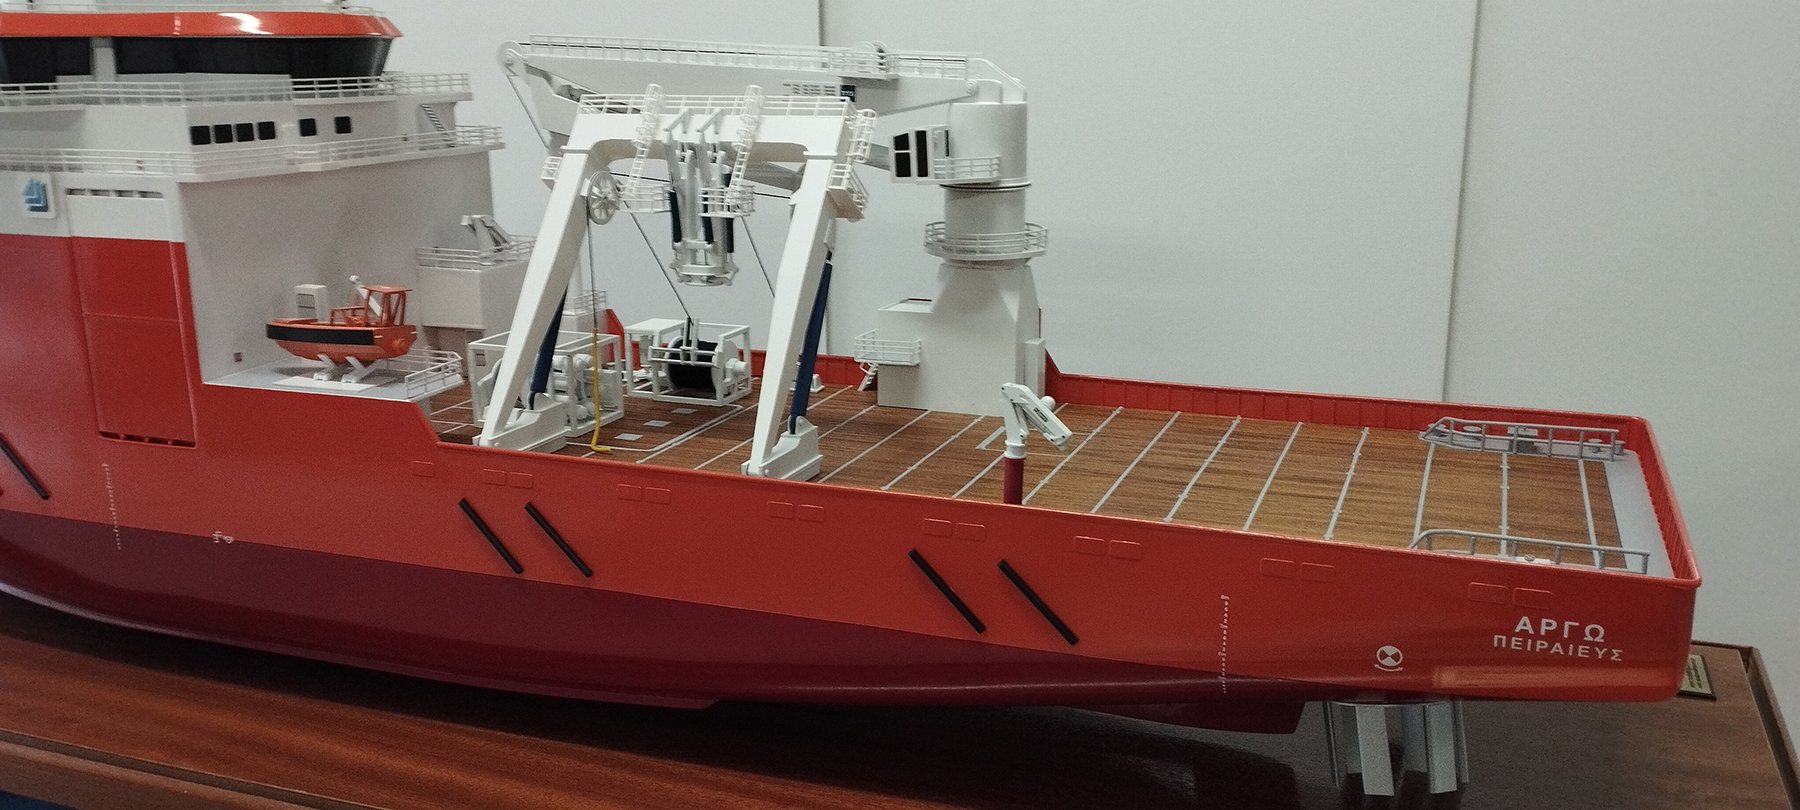 scale-model-ships